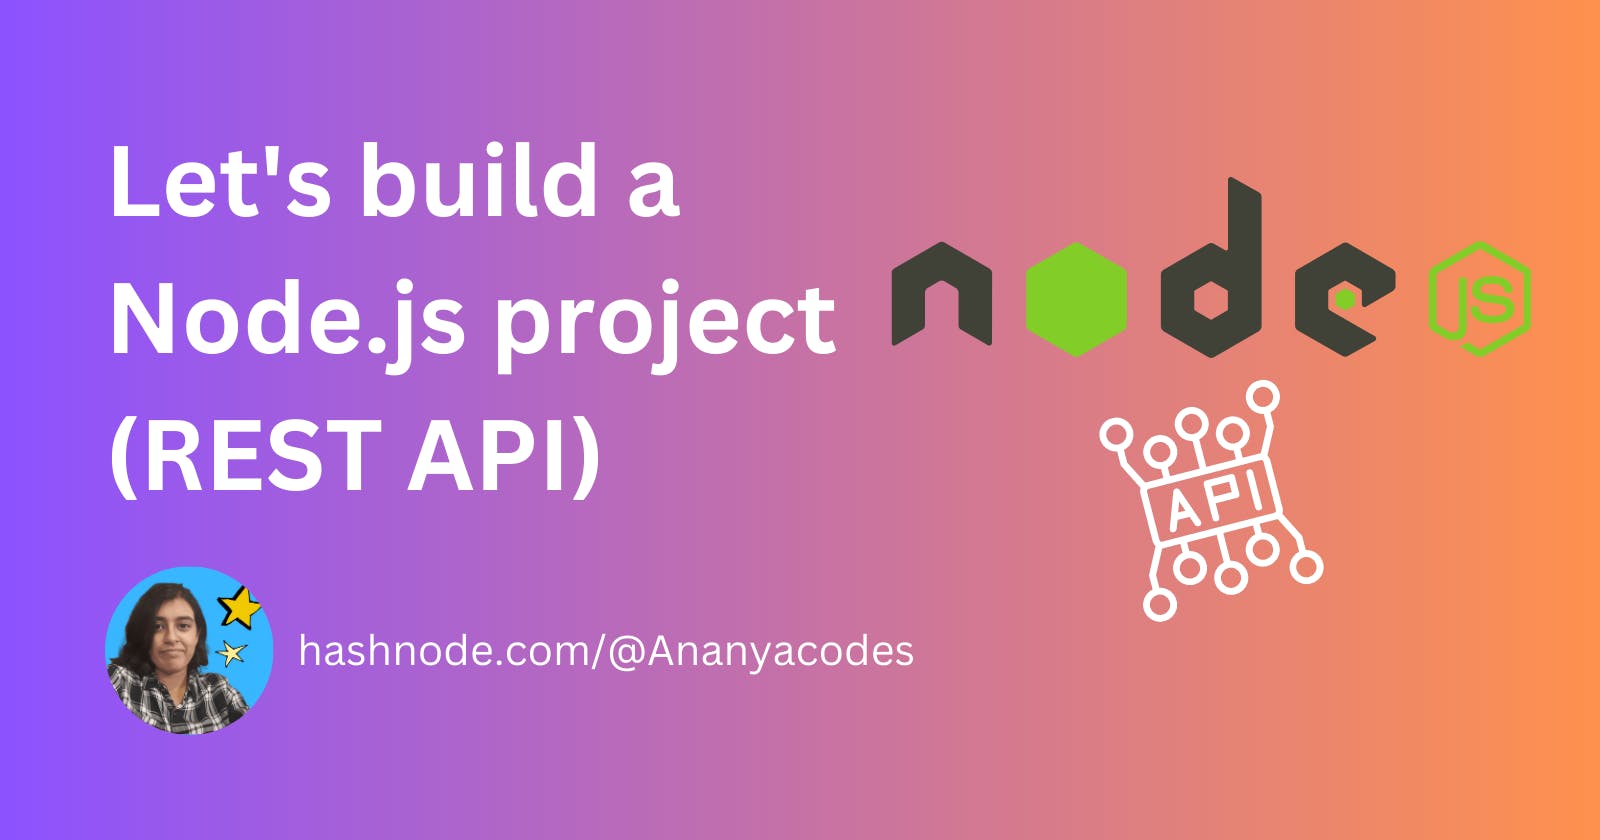 Let's build a Node.js project (REST API)